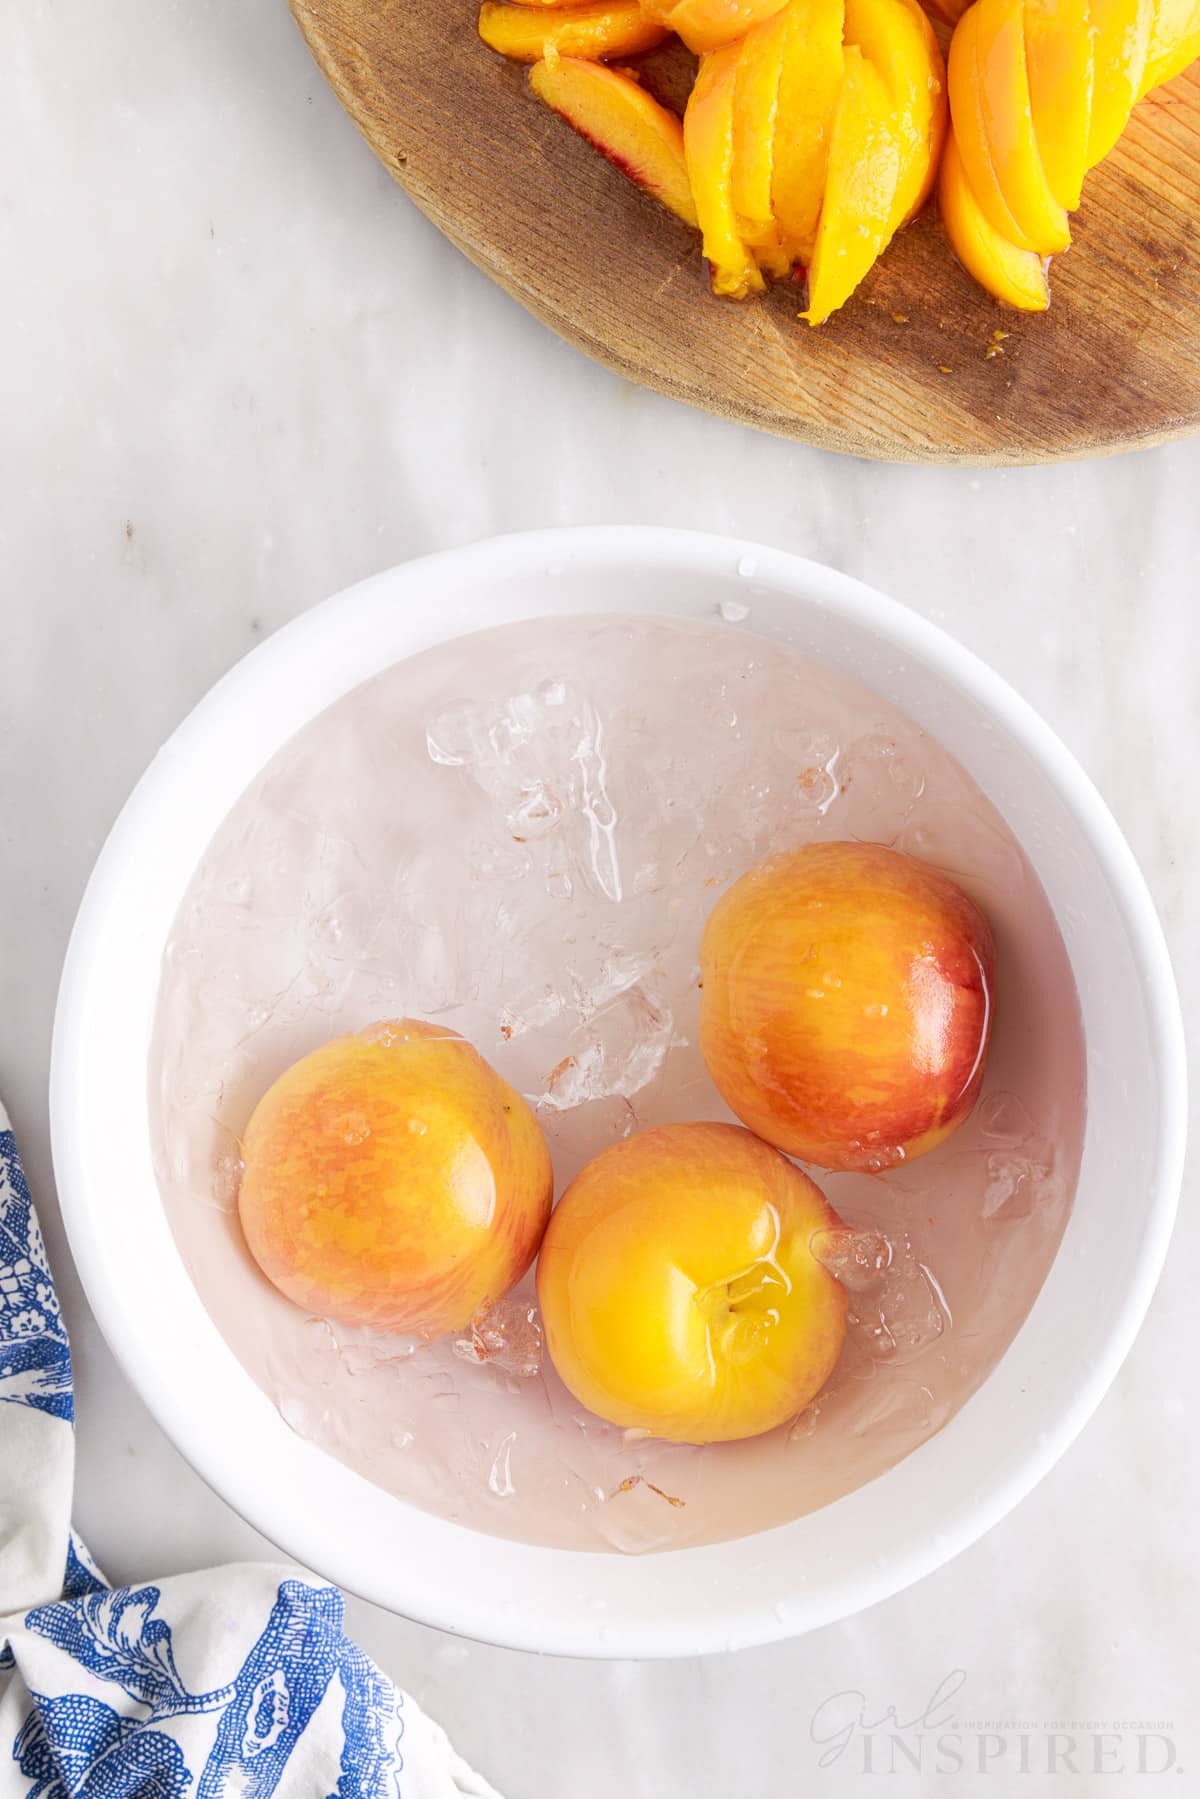 Three peaches in an ice water bath.